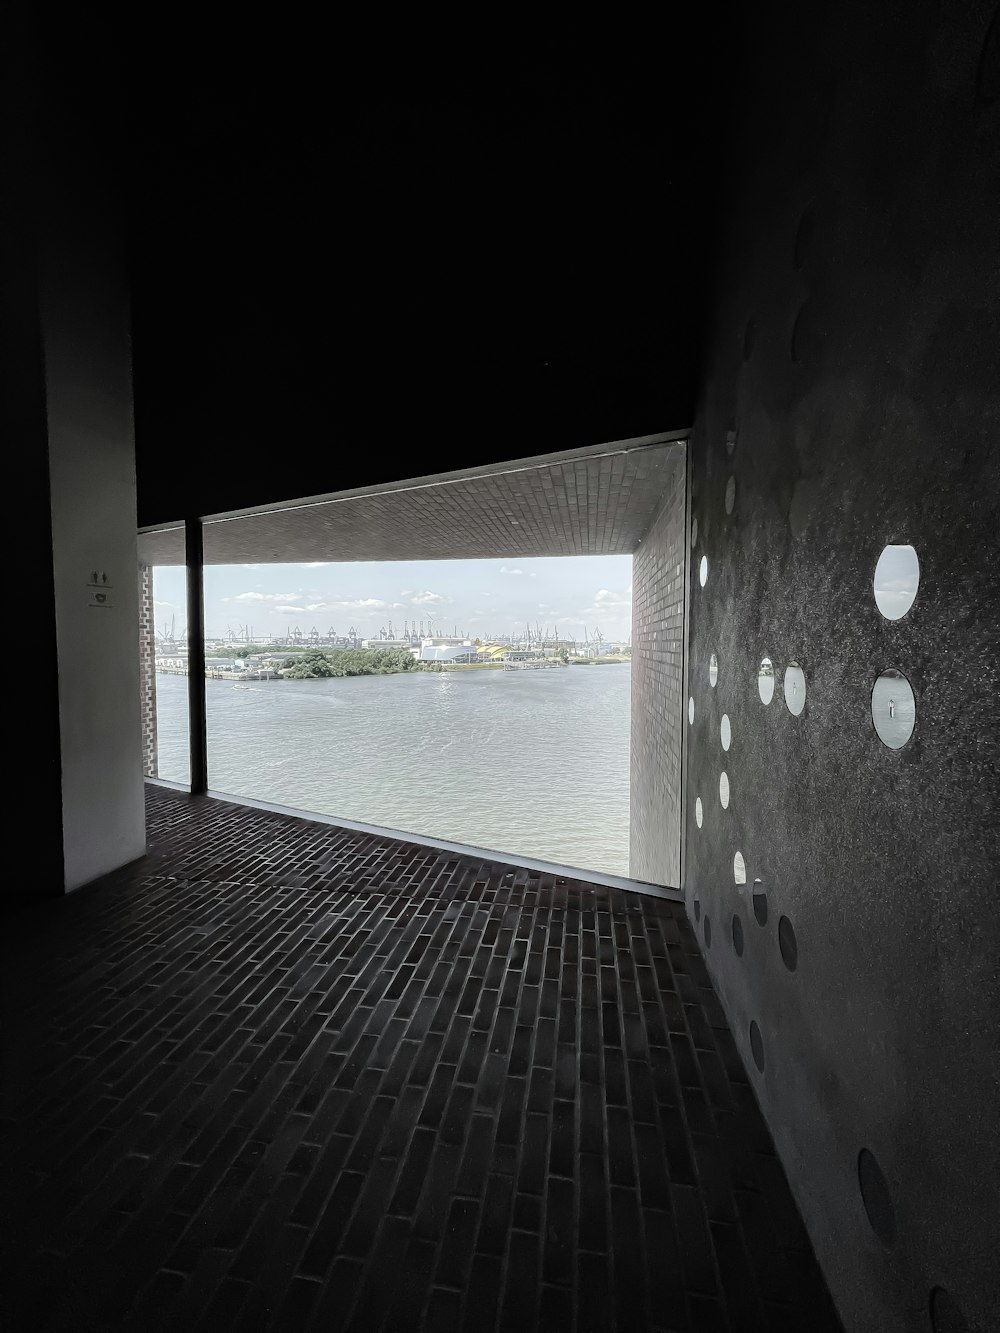 edificio in cemento bianco e nero vicino allo specchio d'acqua durante il giorno